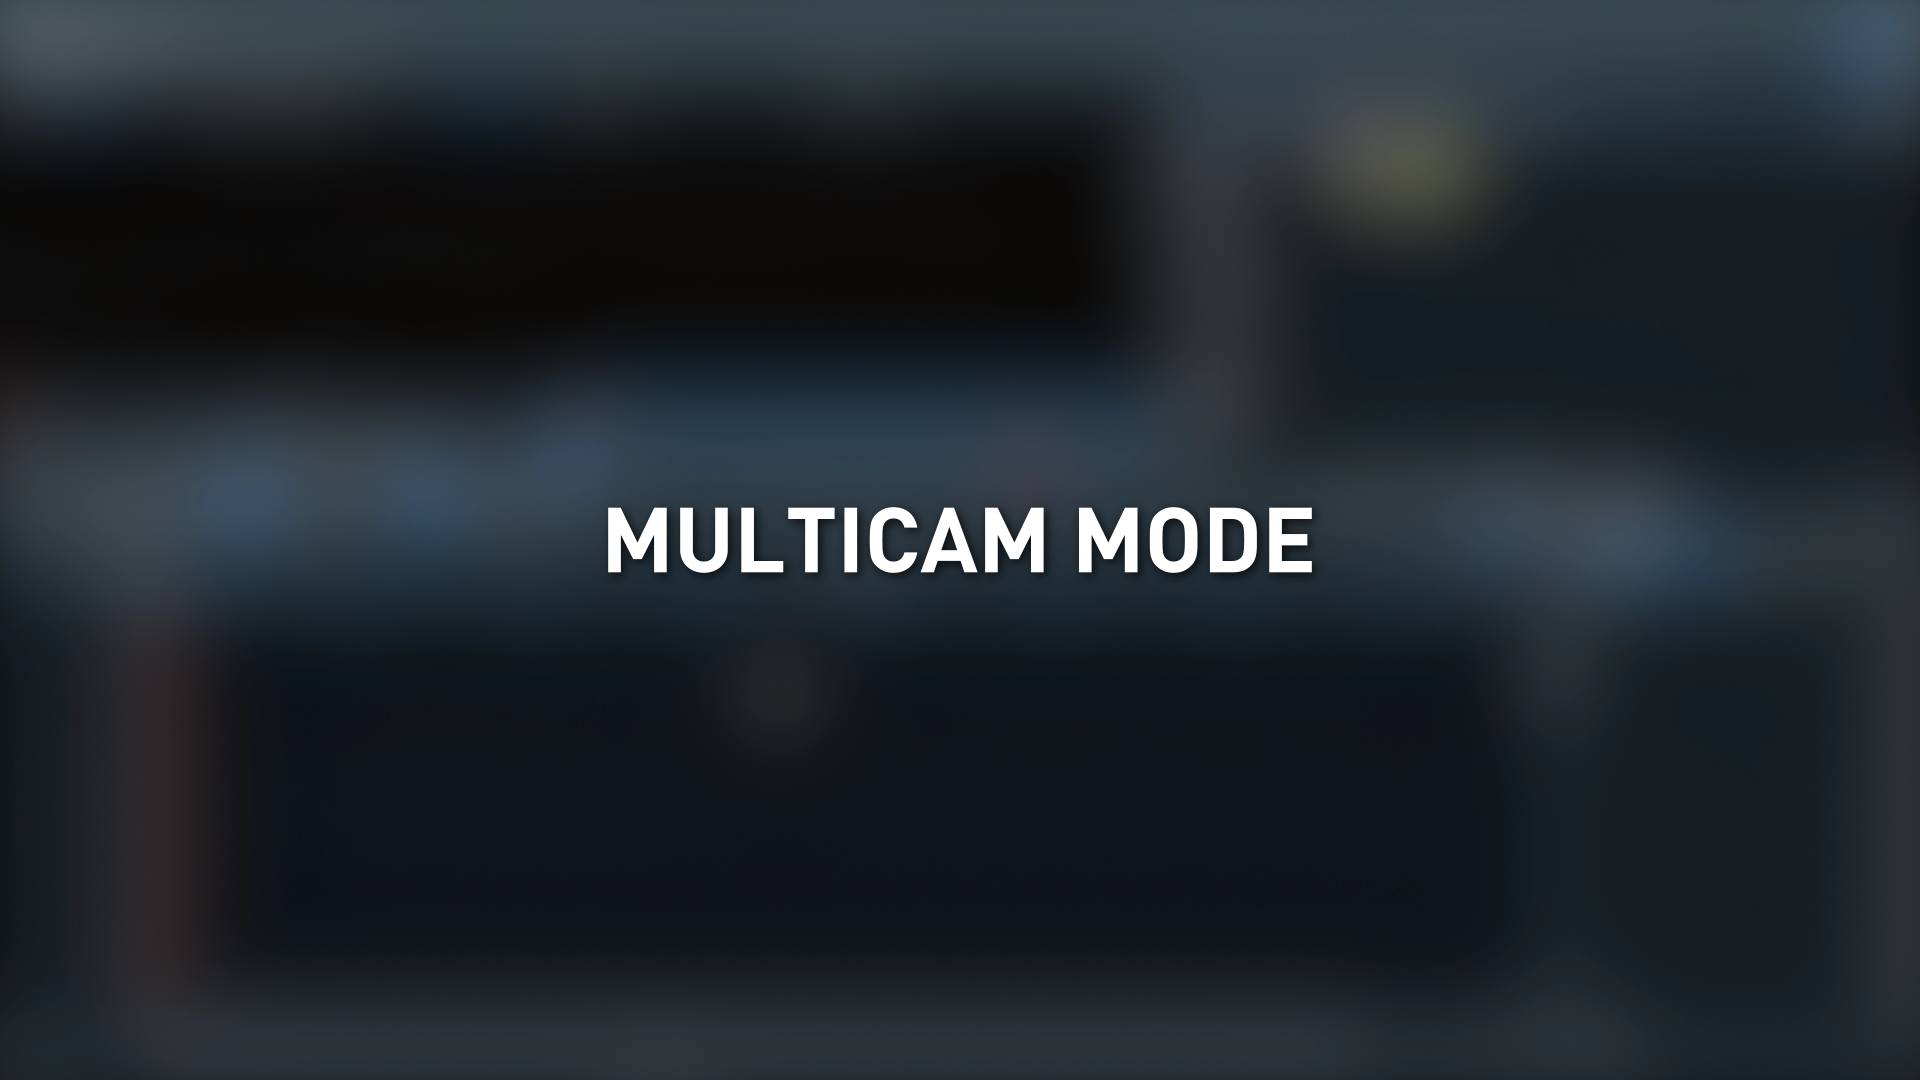 Multicam mode